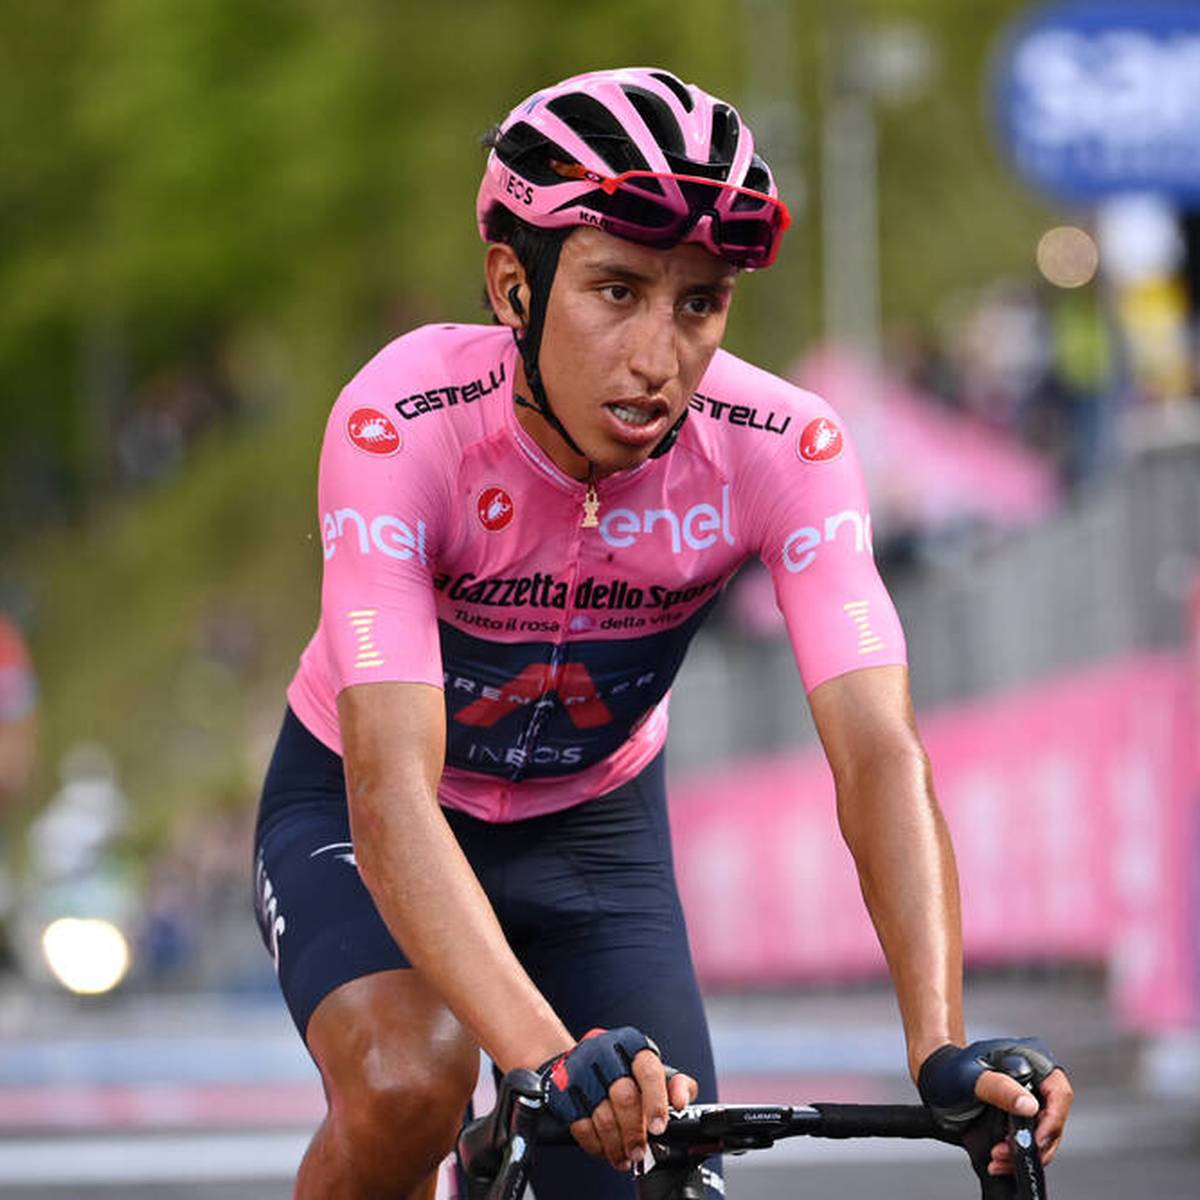 Kolumbiens Rad-Star Egan Bernal verletzt sich bei einem Unfall in seiner Heimat schwer. Der Giro-Sieger kollidiert mit einem Reisebus. Er muss mehrfach operiert werden.